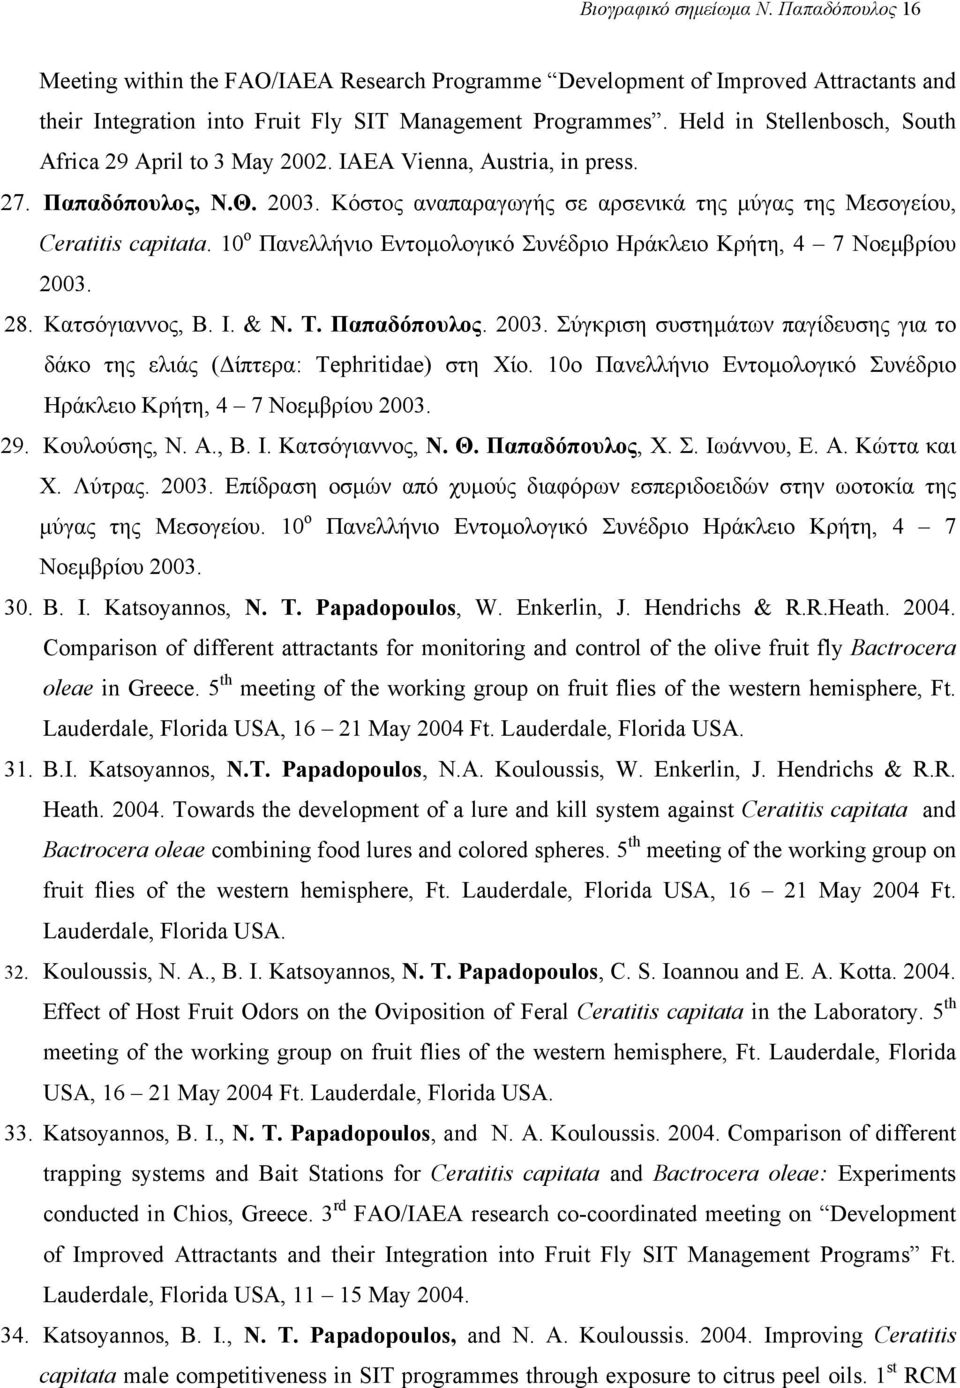 10 ο Πανελλήνιο Εντοµολογικό Συνέδριο Ηράκλειο Κρήτη, 4 7 Νοεµβρίου 2003. 28. Κατσόγιαννος, Β. Ι. & Ν. Τ. Παπαδόπουλος. 2003. Σύγκριση συστηµάτων παγίδευσης για το δάκο της ελιάς ( ίπτερα: Tephritidae) στη Χίο.